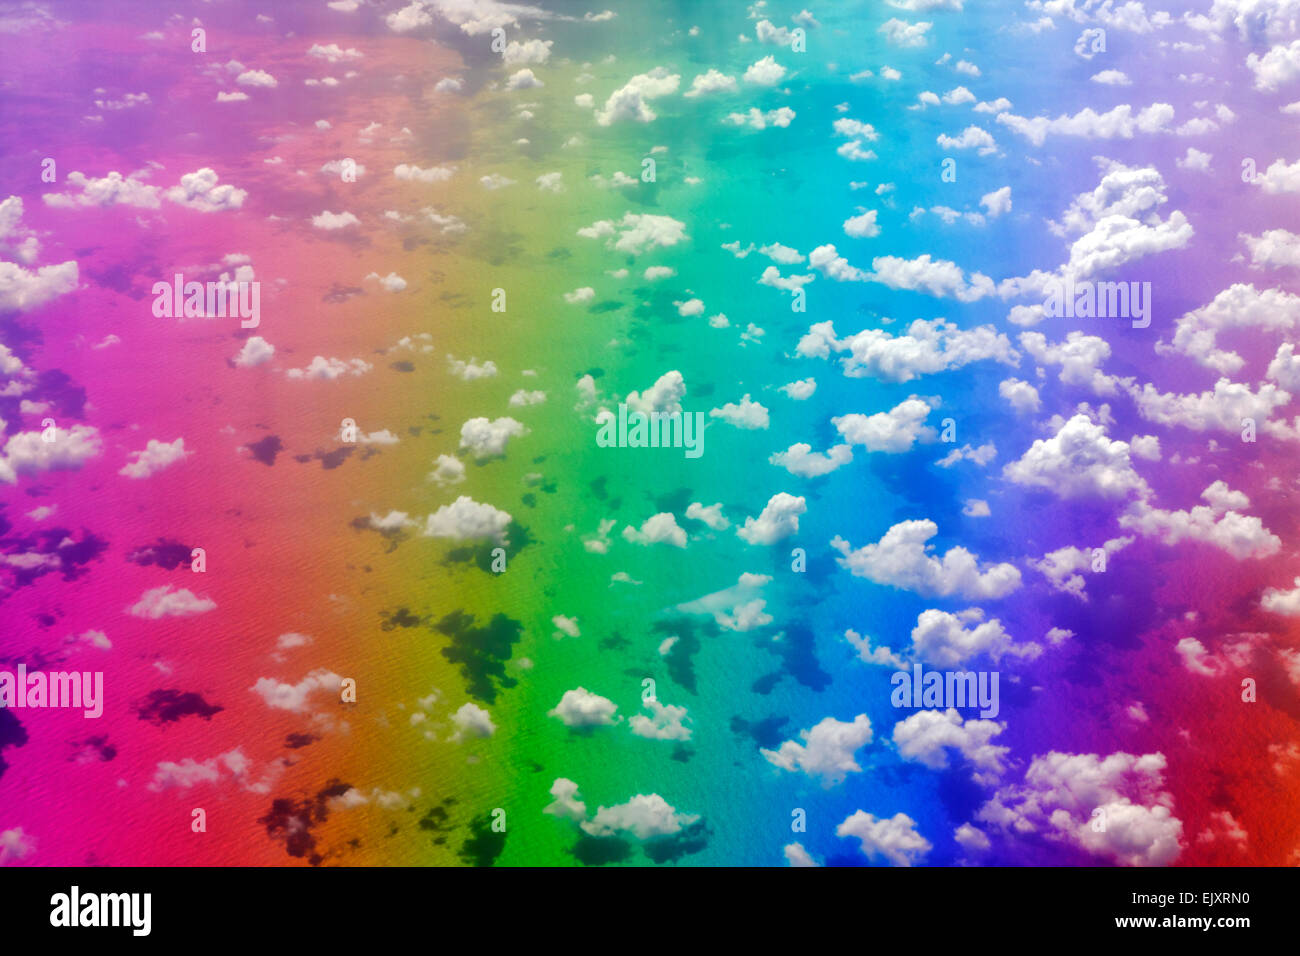 Los colores del arco iris sobre la superficie del océano con nubes arriba Foto de stock